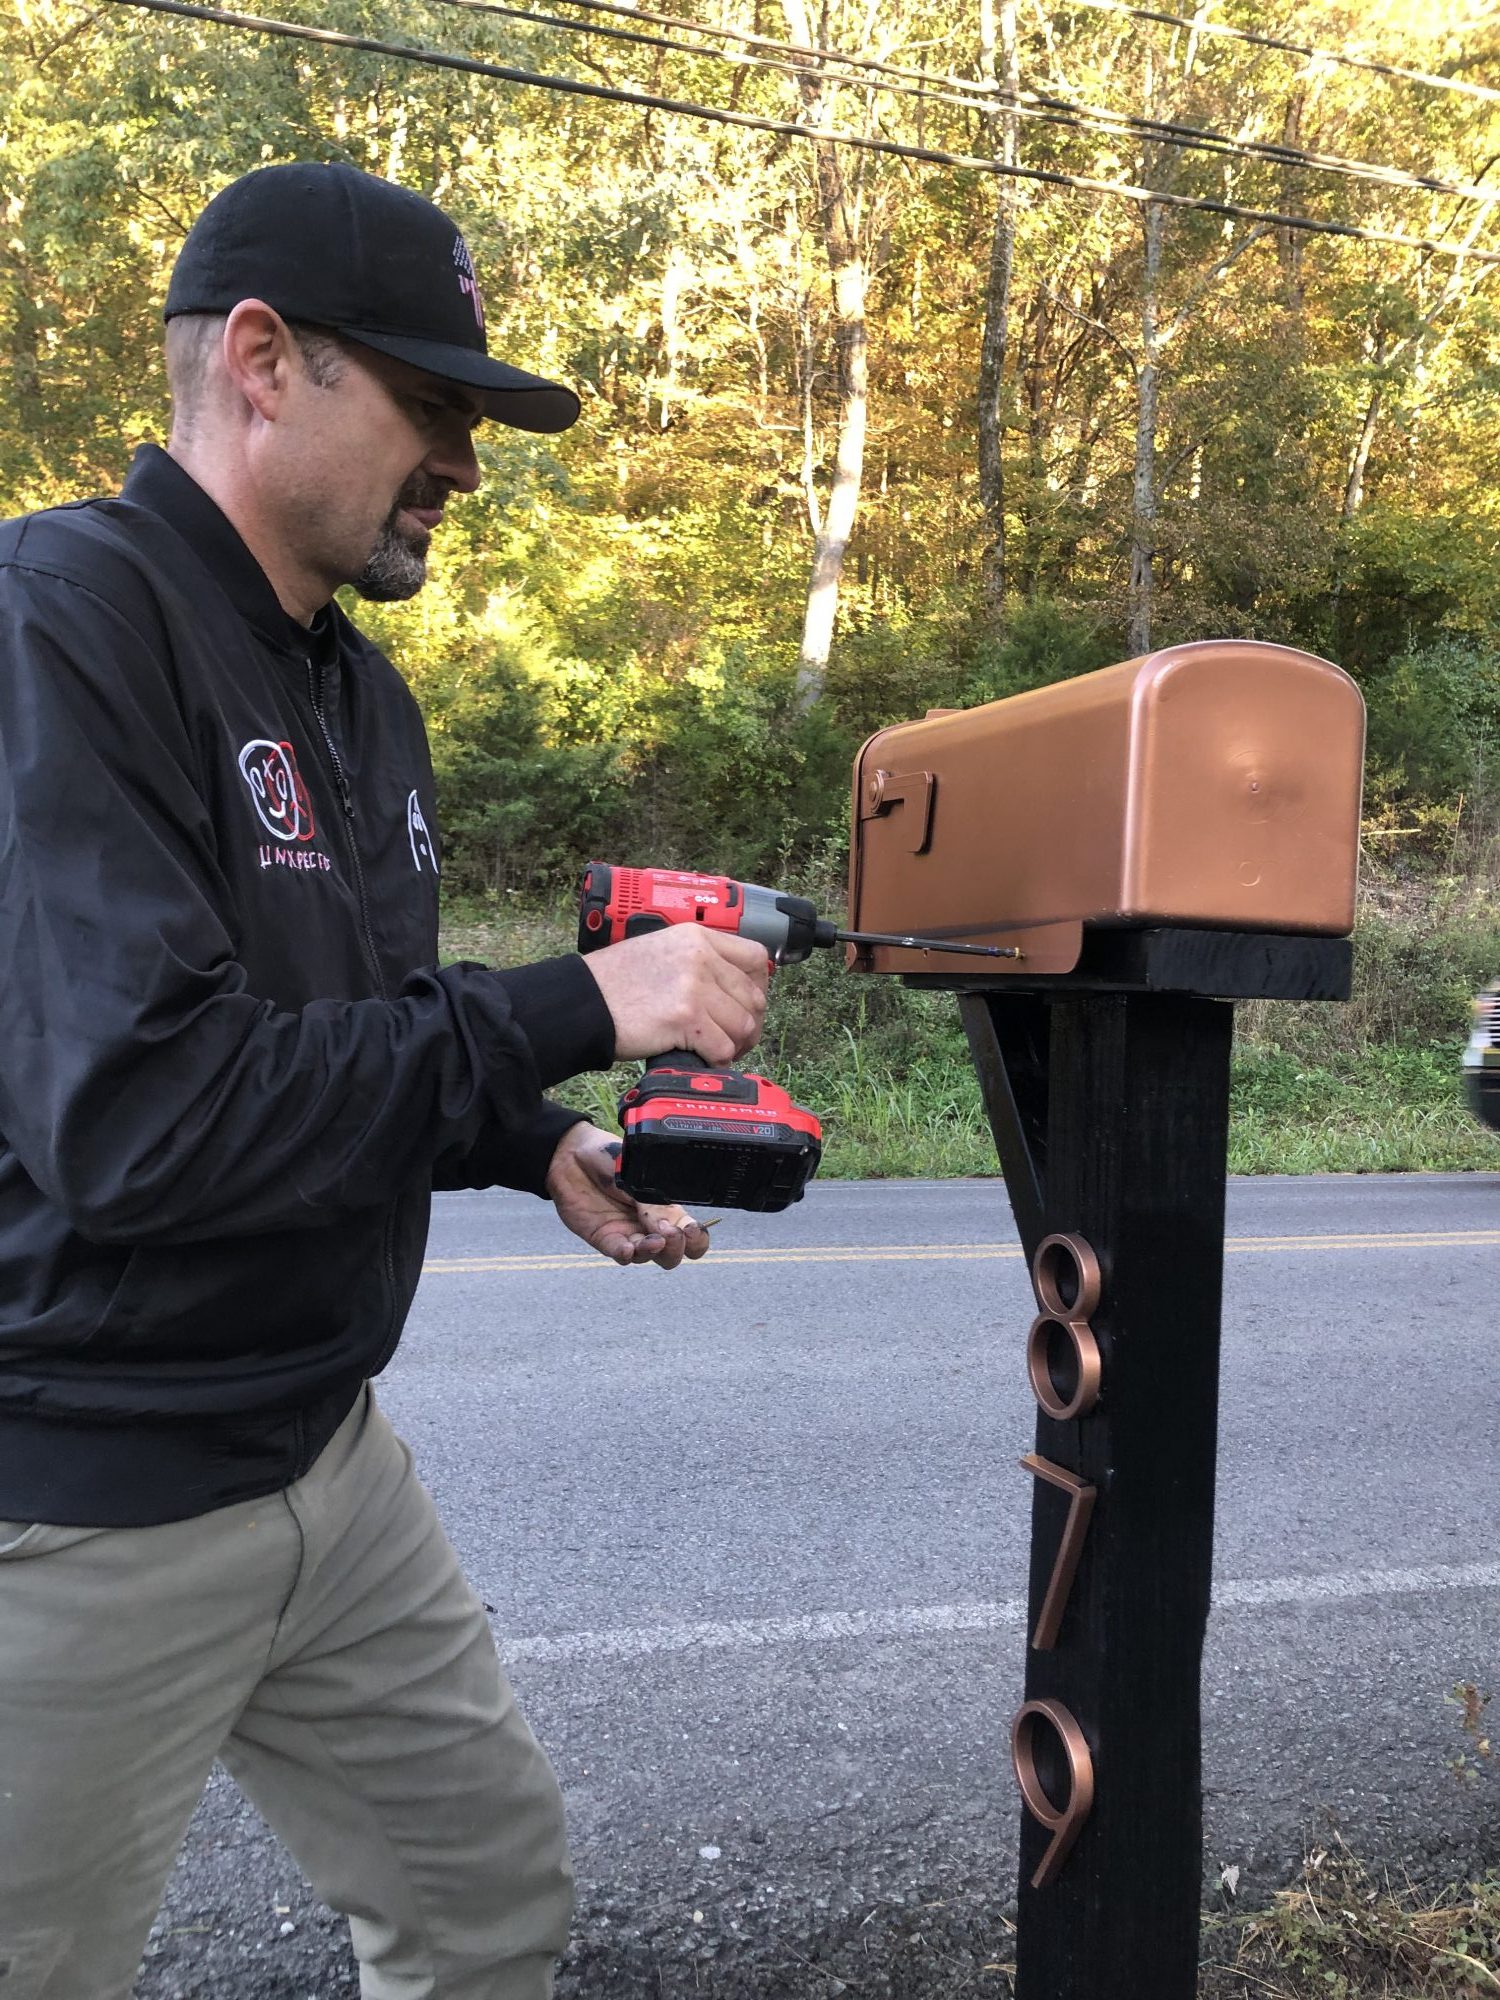 DIY mailbox makeover